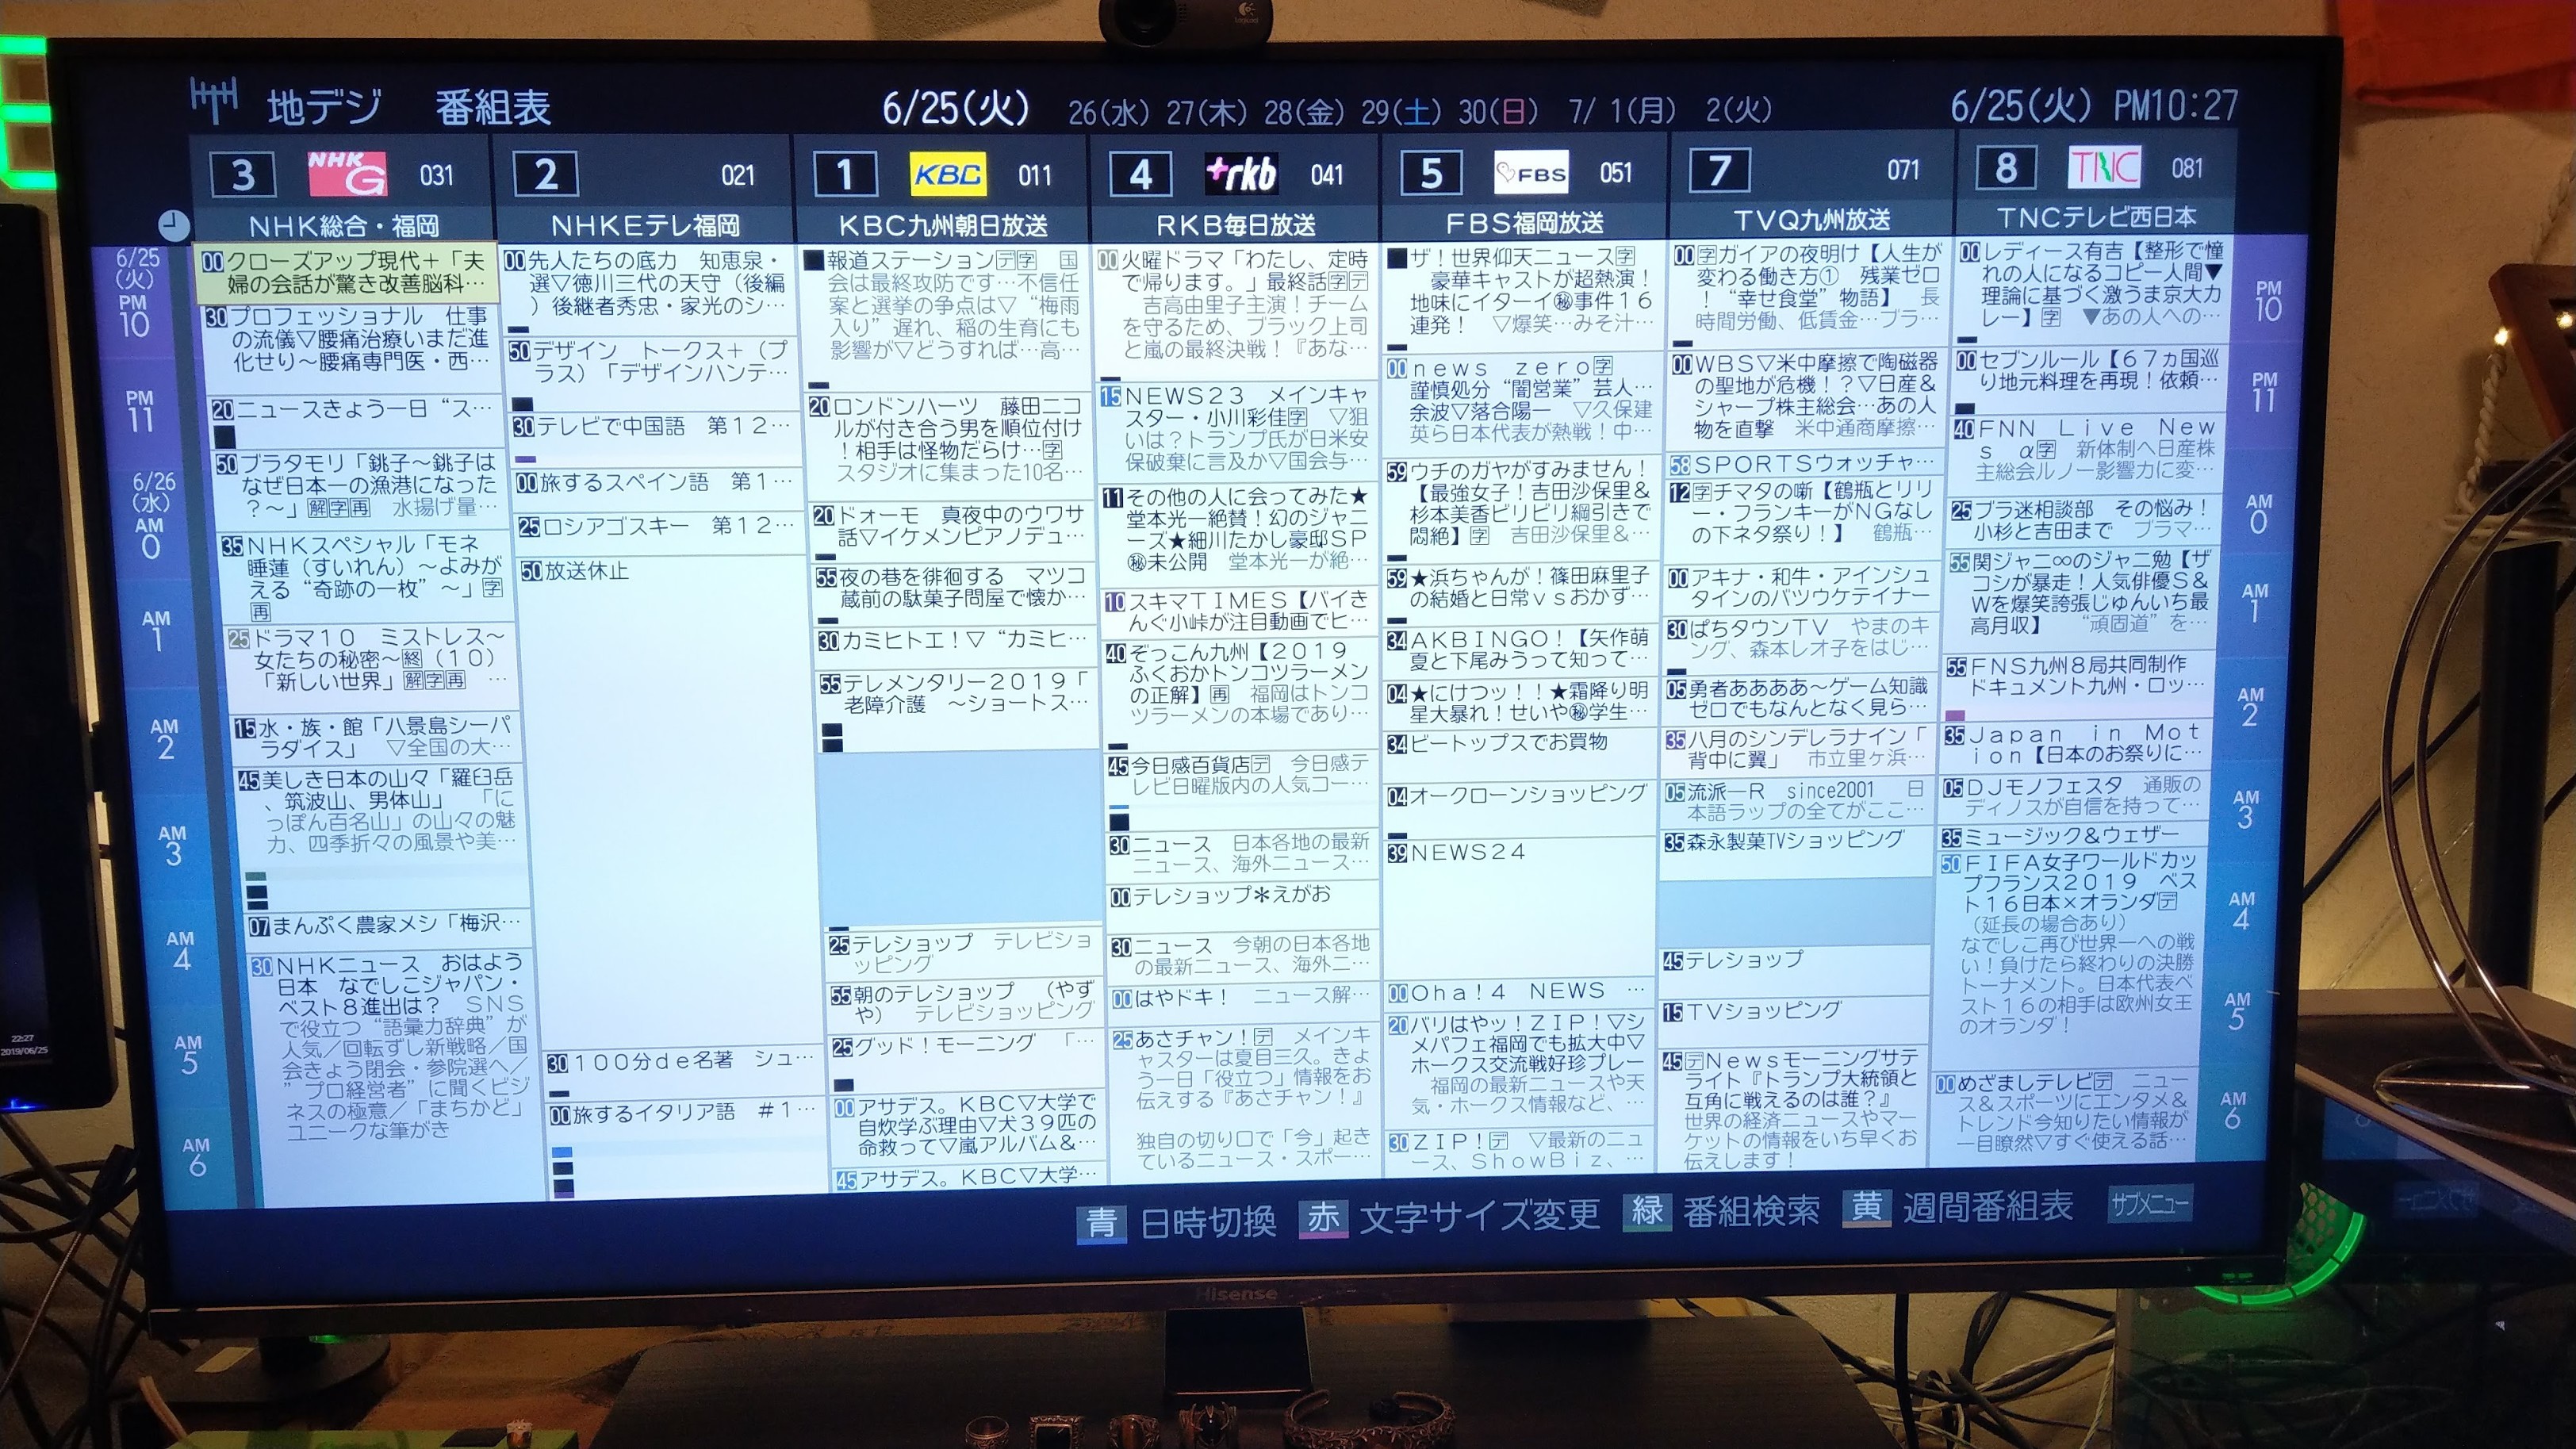 JTOR 360 GAMER 4K HDR な ハイセンスのテレビ PCモニタ 設定奮闘記